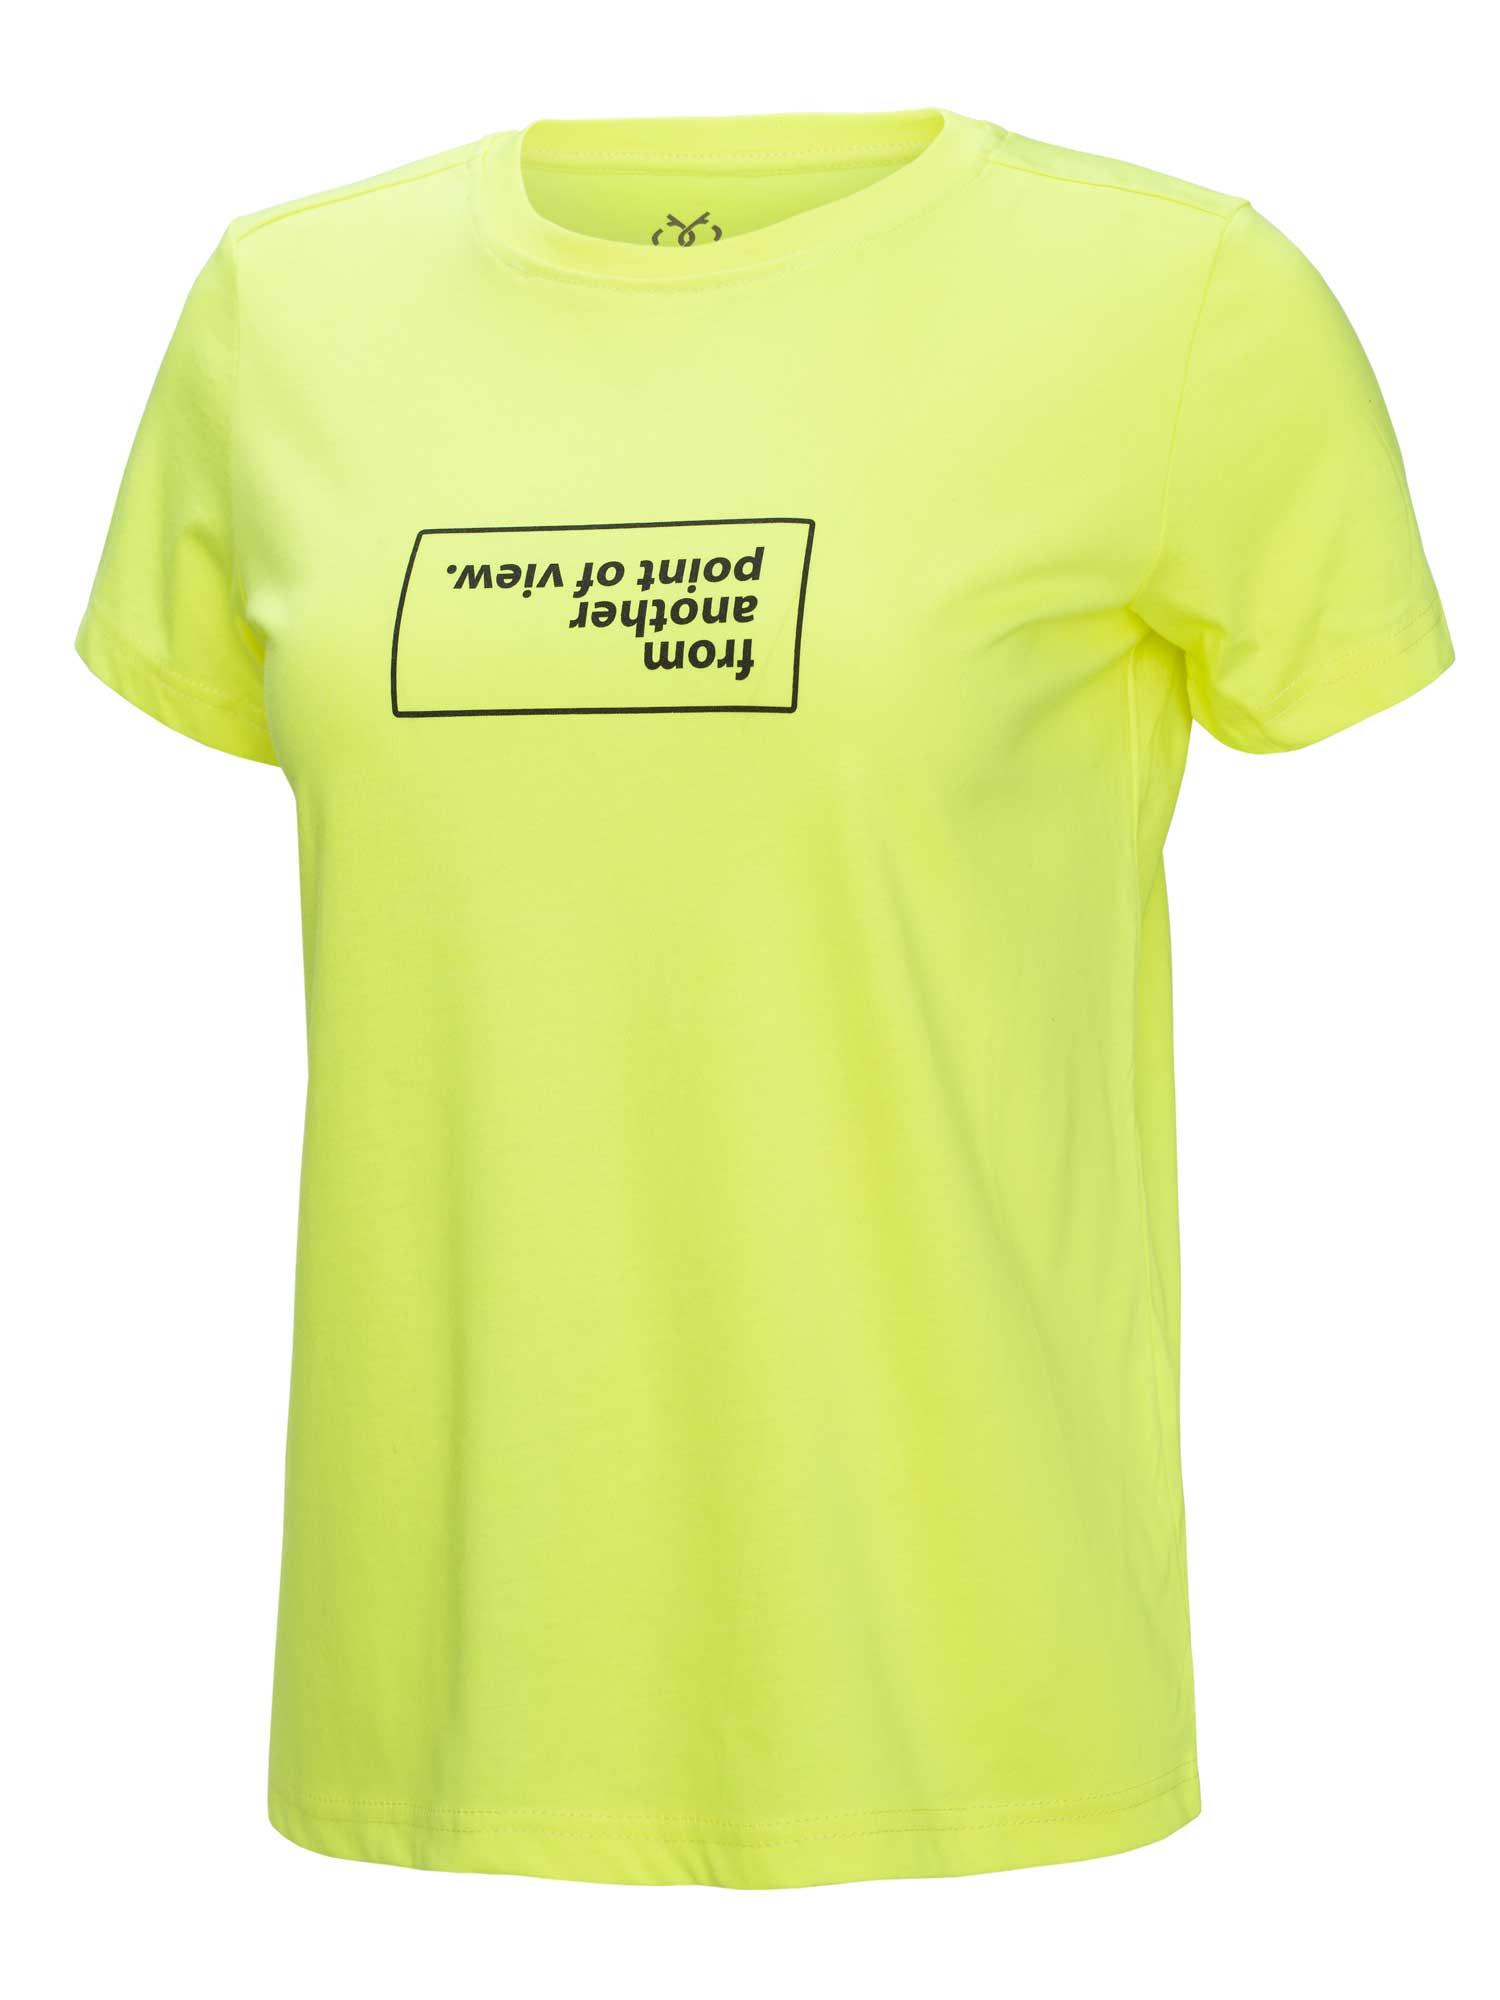 Selected image for BRILLE Ženska majica kratkih rukava Fapav T-shirt žuta